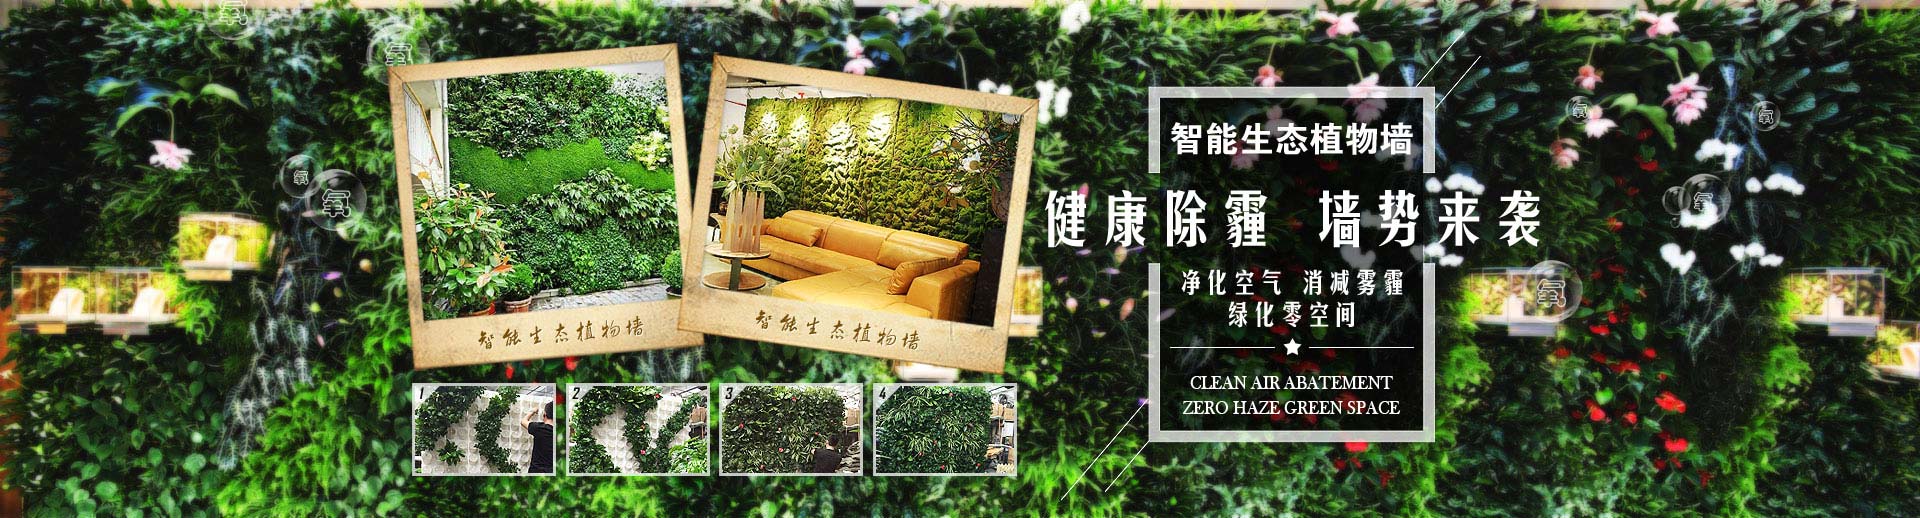 绿盒子植物墙